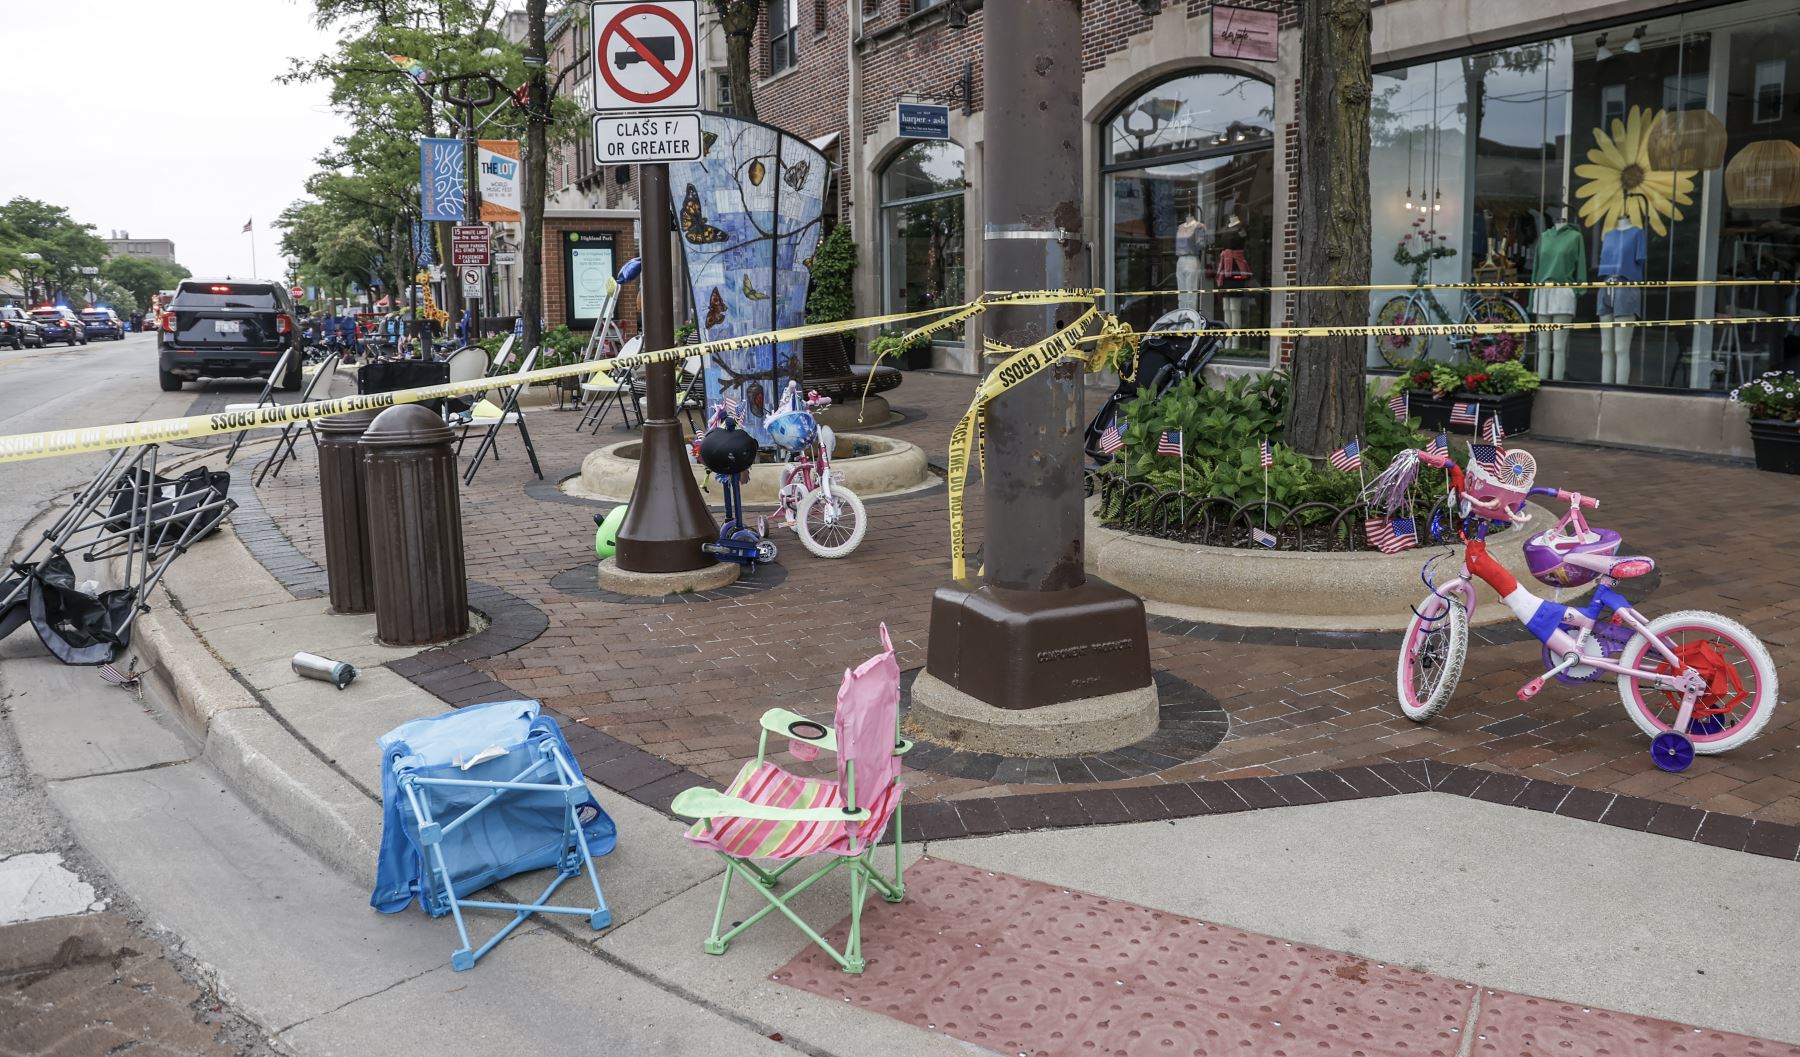 Sillas y bicicletas yacen abandonadas después de que la gente huyó de la escena de un tiroteo masivo en una celebración y desfile del 4 de julio en Highland Park, Illinois, EE. UU., 04 de julio de 2022.
Foto: EFE